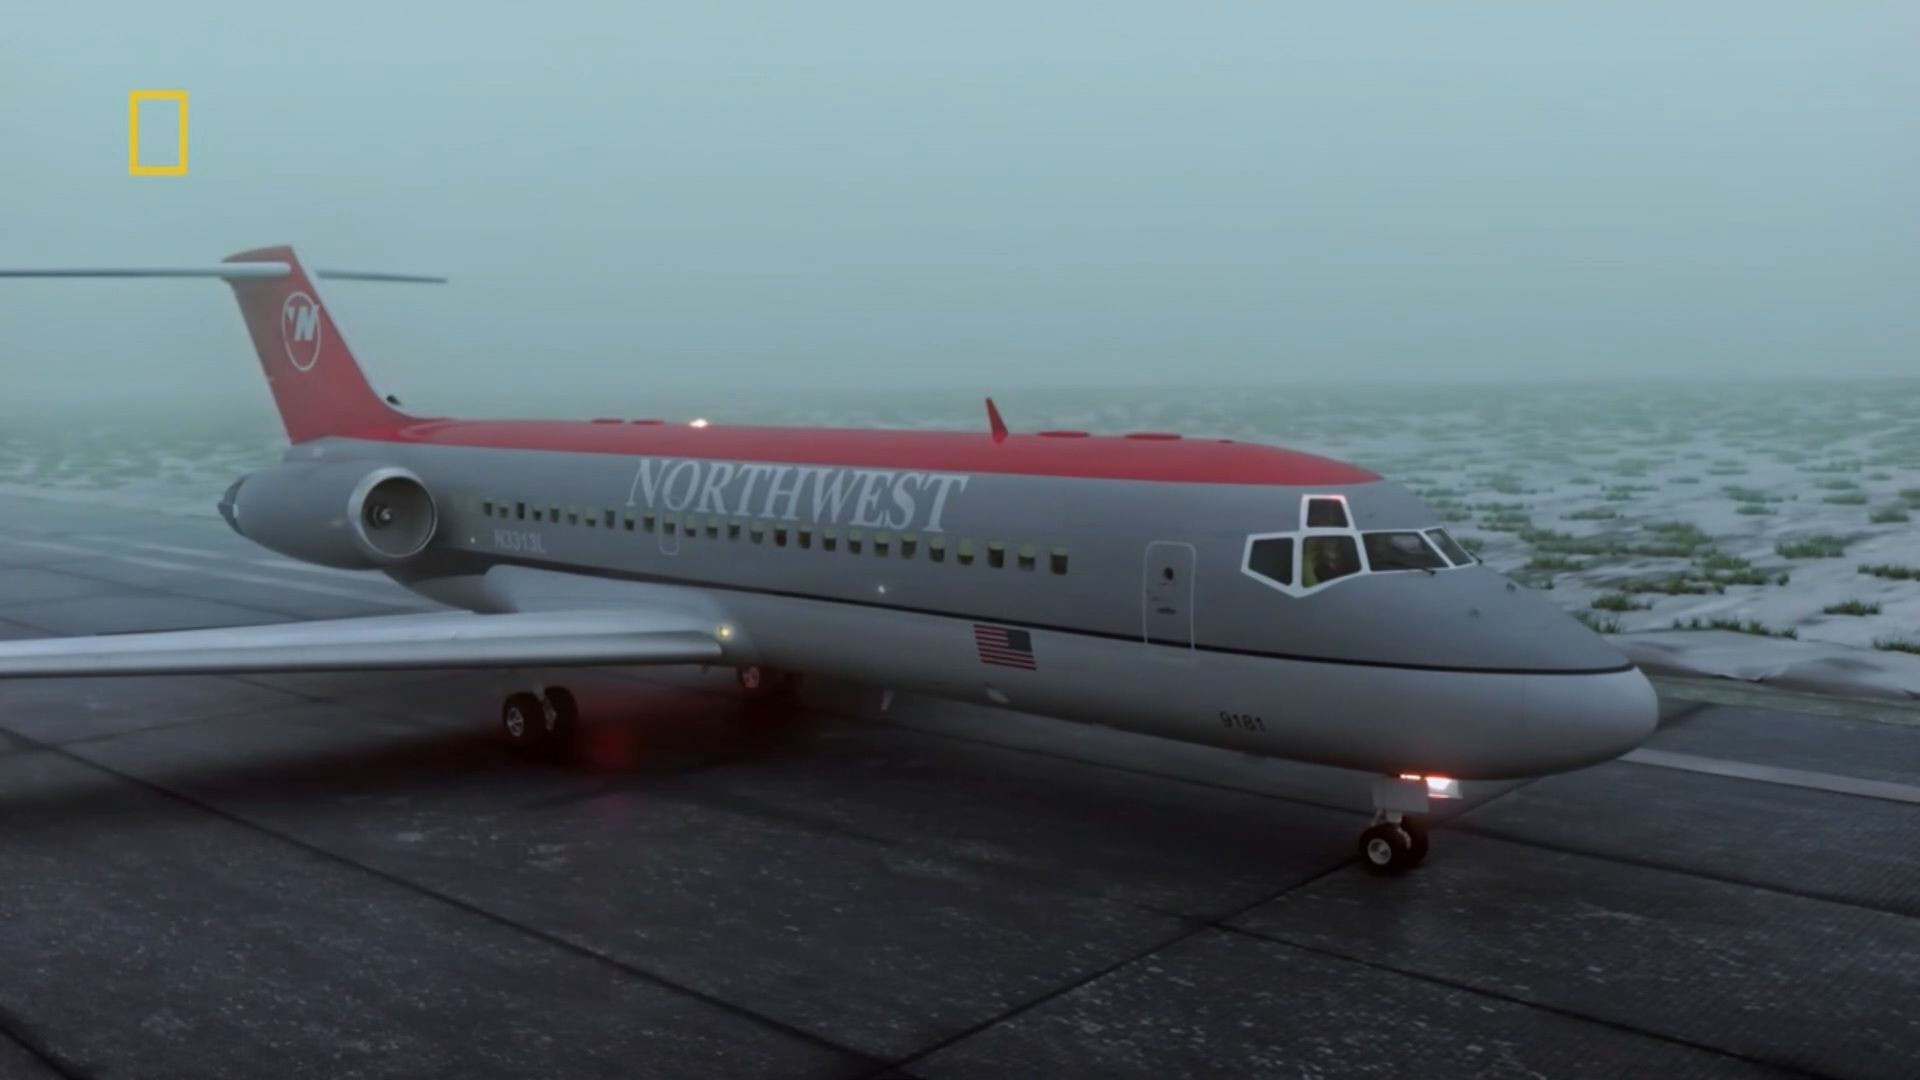 Расследование авиакатастроф 1. Расследование авиакатастроф. Расследование авиакатастроф 2020. Рейс 255 Northwest Airlines.